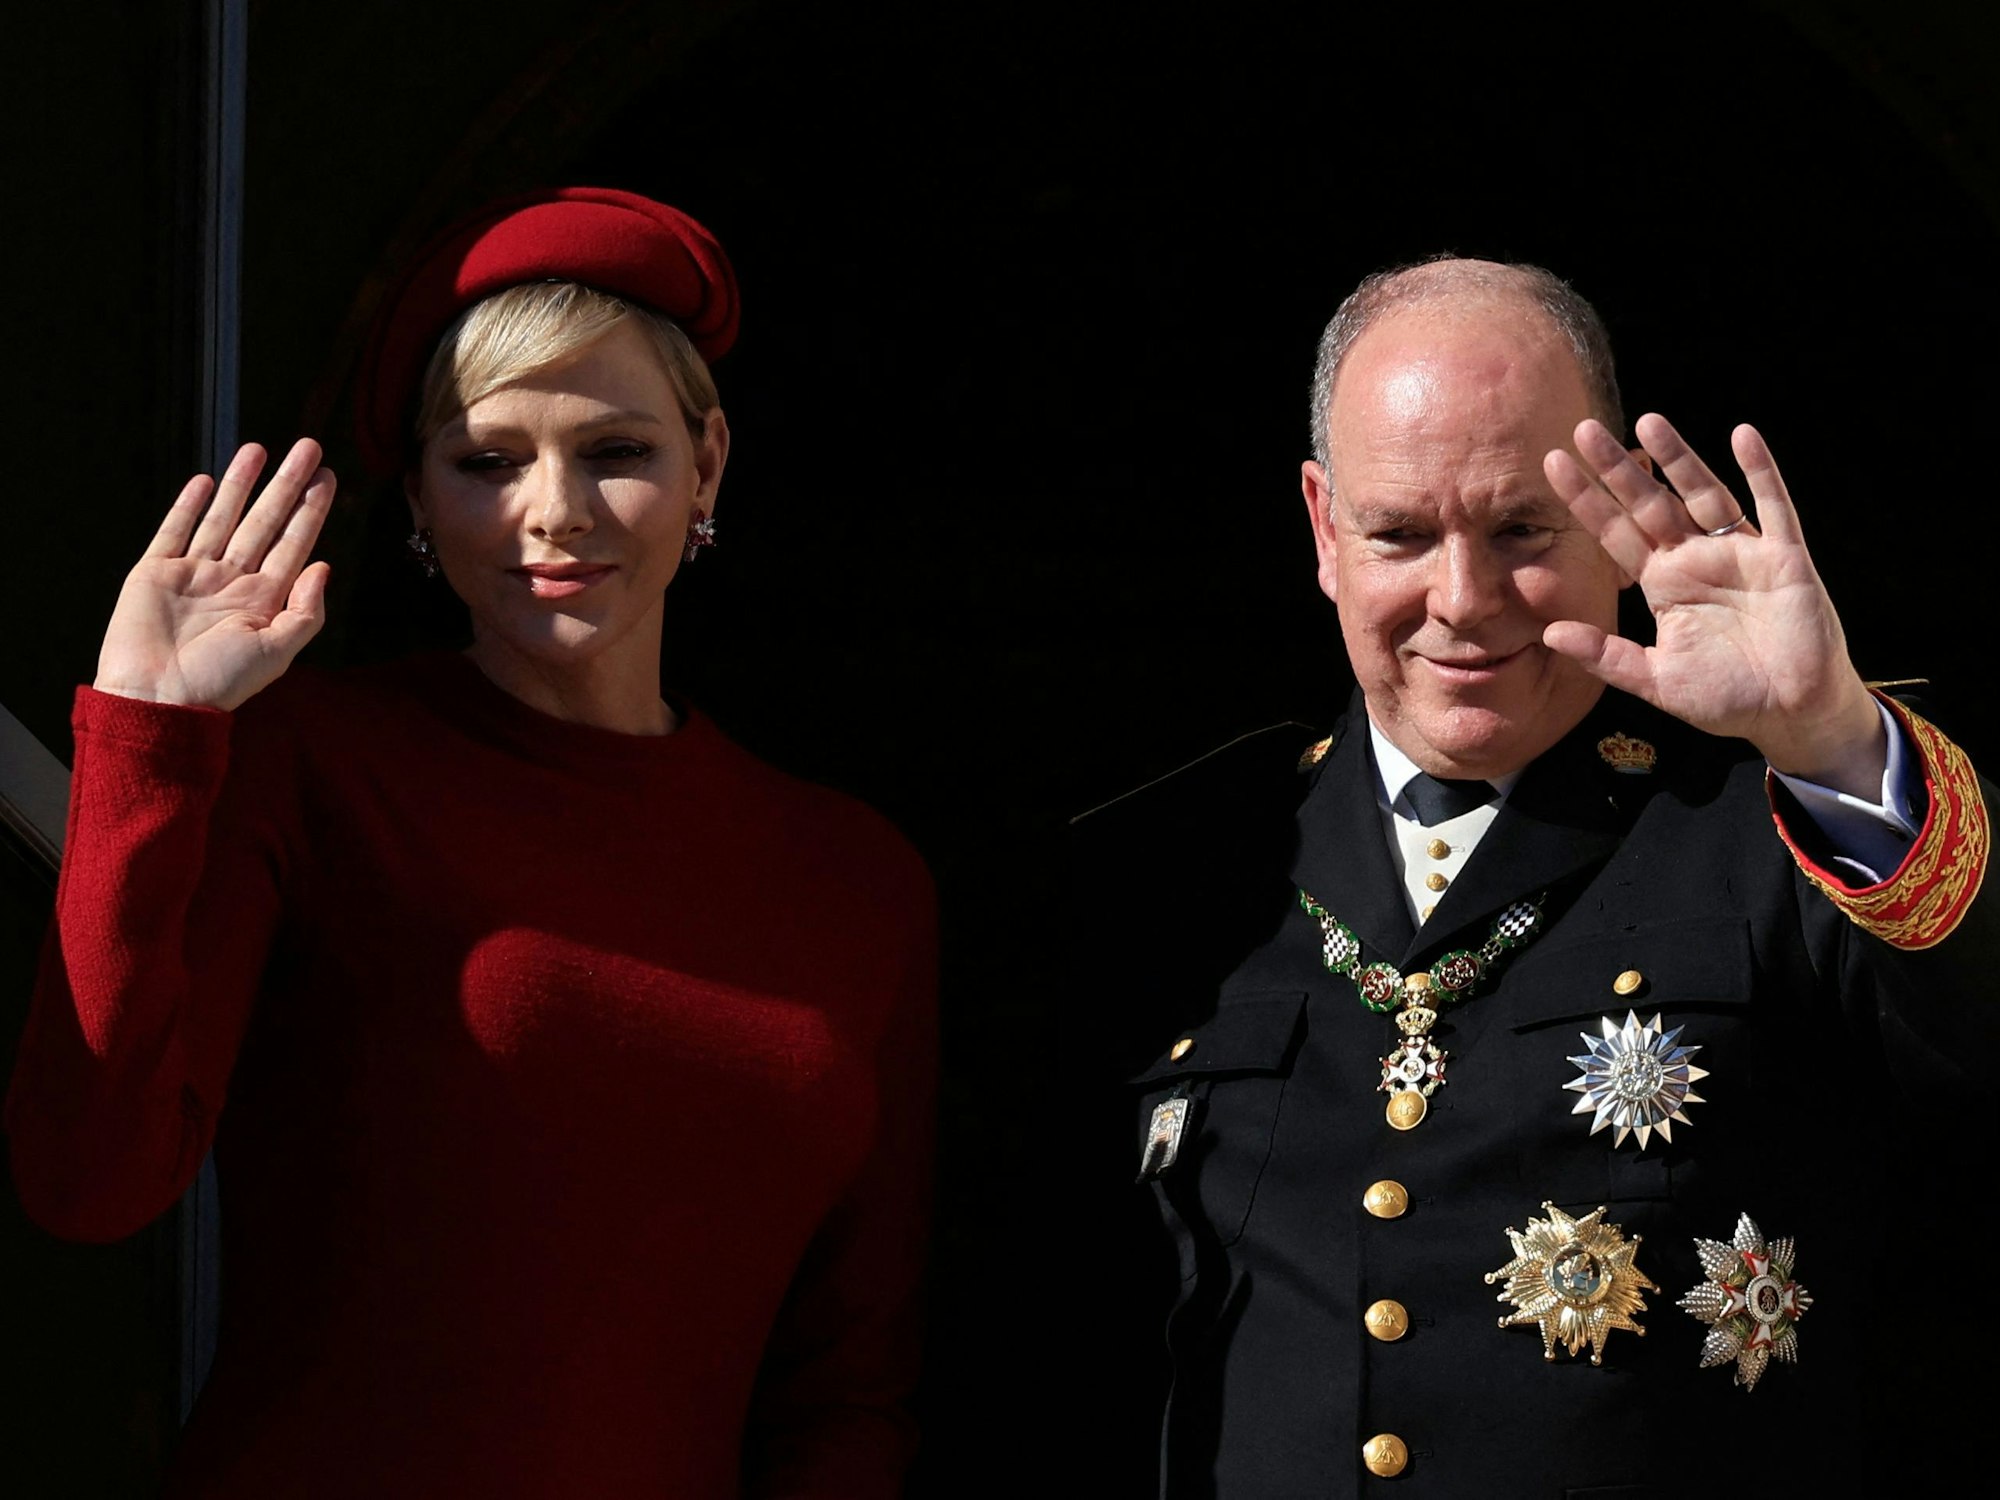 Fürst Albert II. von Monaco (r.) und Fürstin Charlène von Monaco (l.) winken vom Balkon des Fürstenpalastes während einer Zeremonie zum Nationalfeiertag.